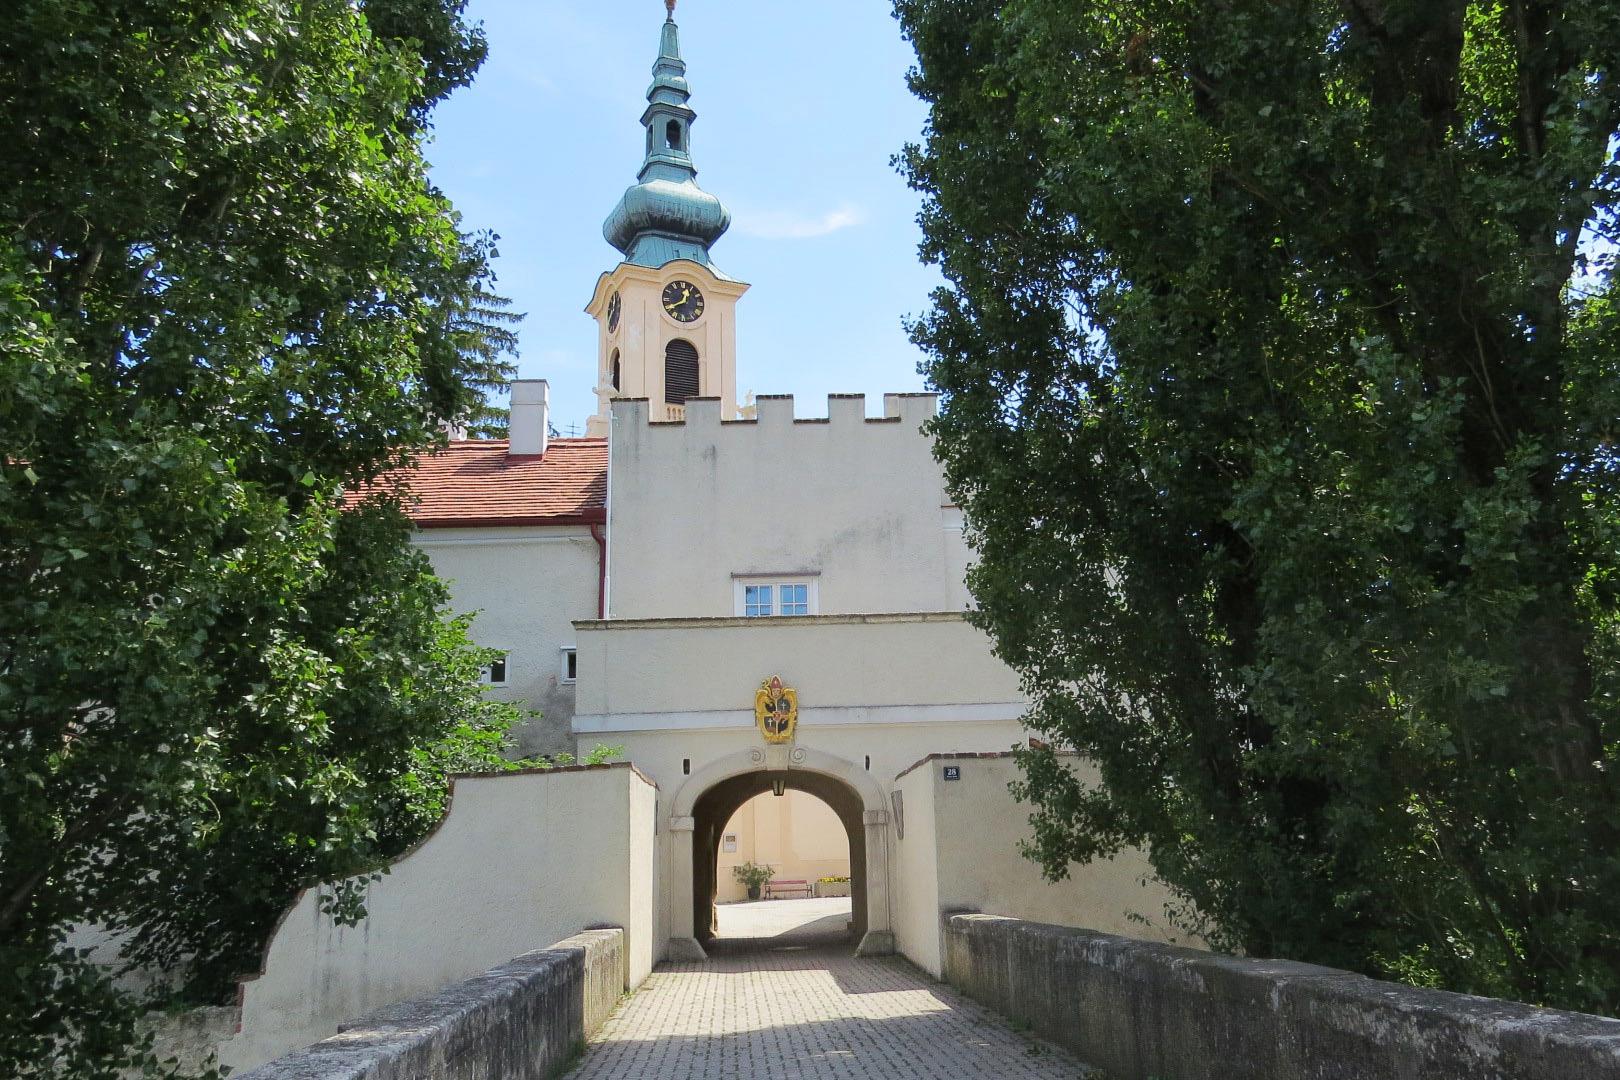 Pfarrkirche St. Margaretha